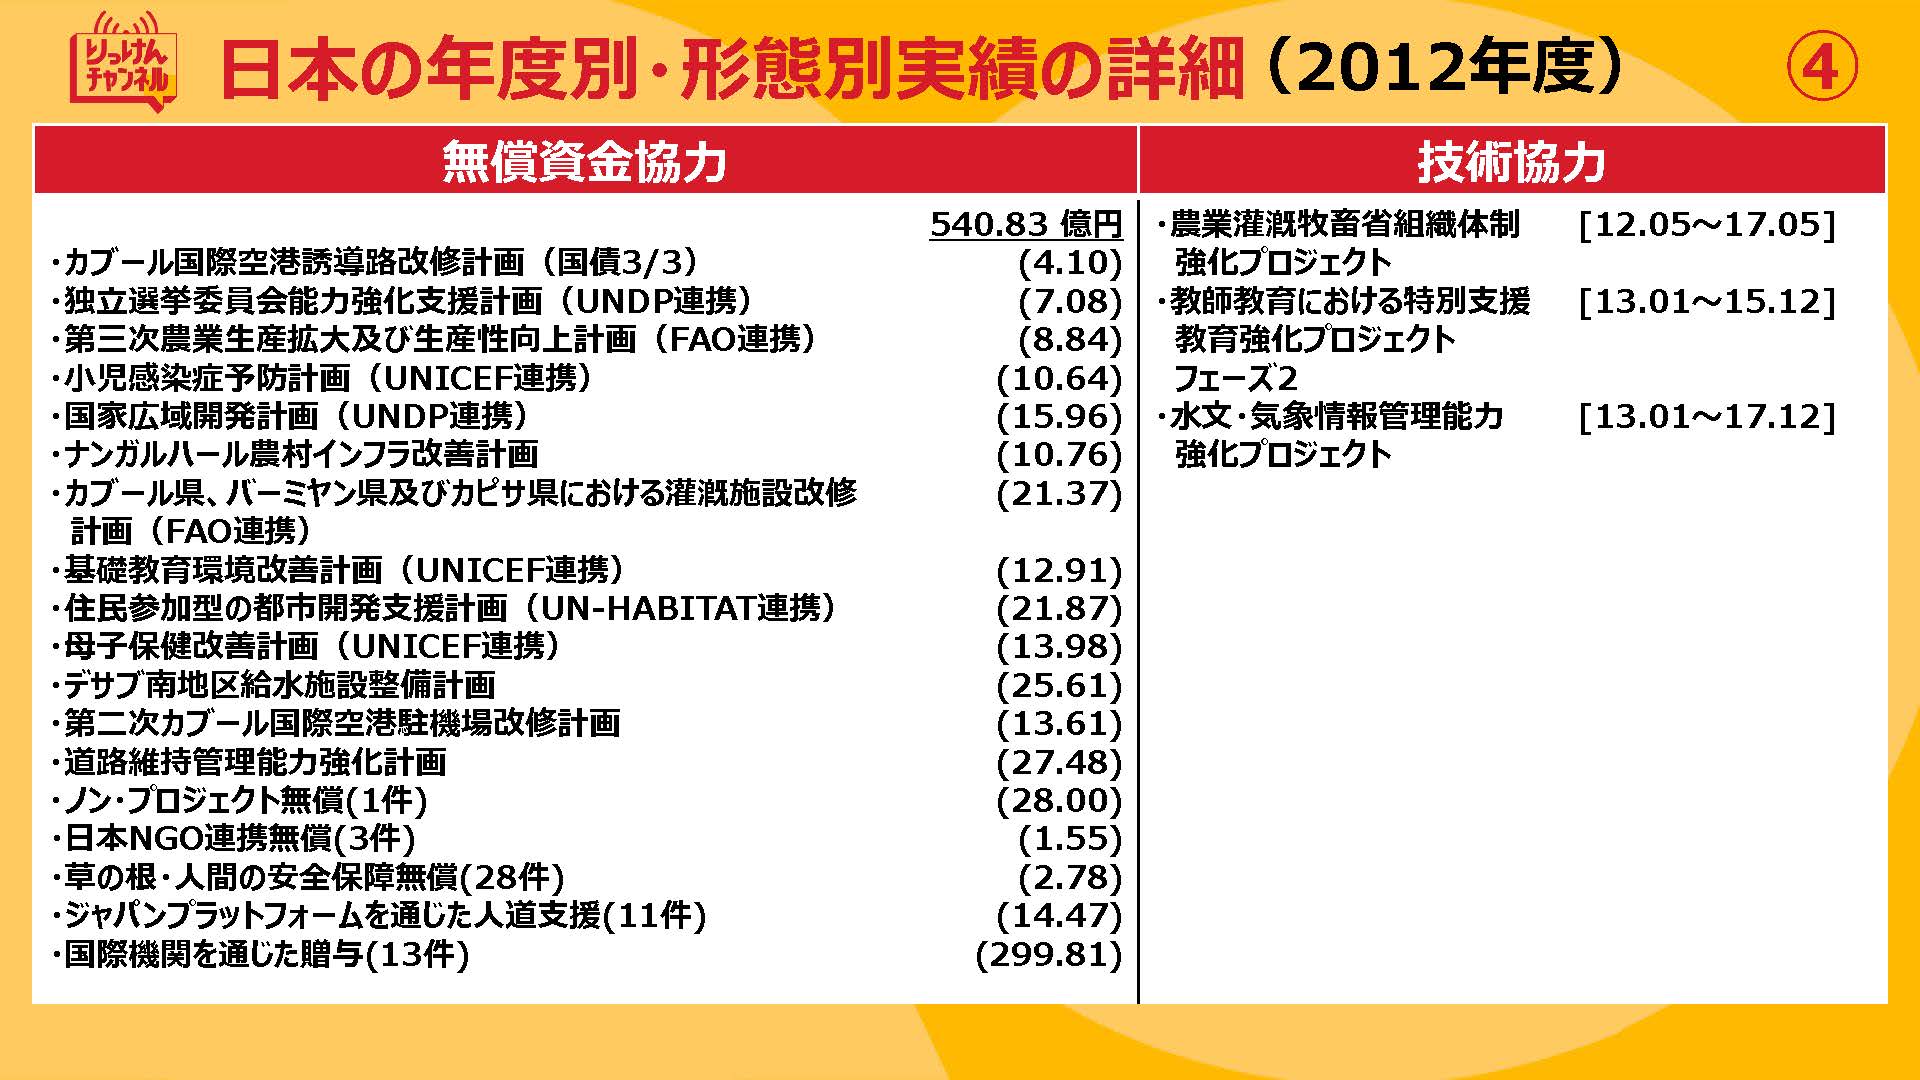 20210924_日本の年度別・形態別実績の詳細（2009~2012)_ページ_4.jpg